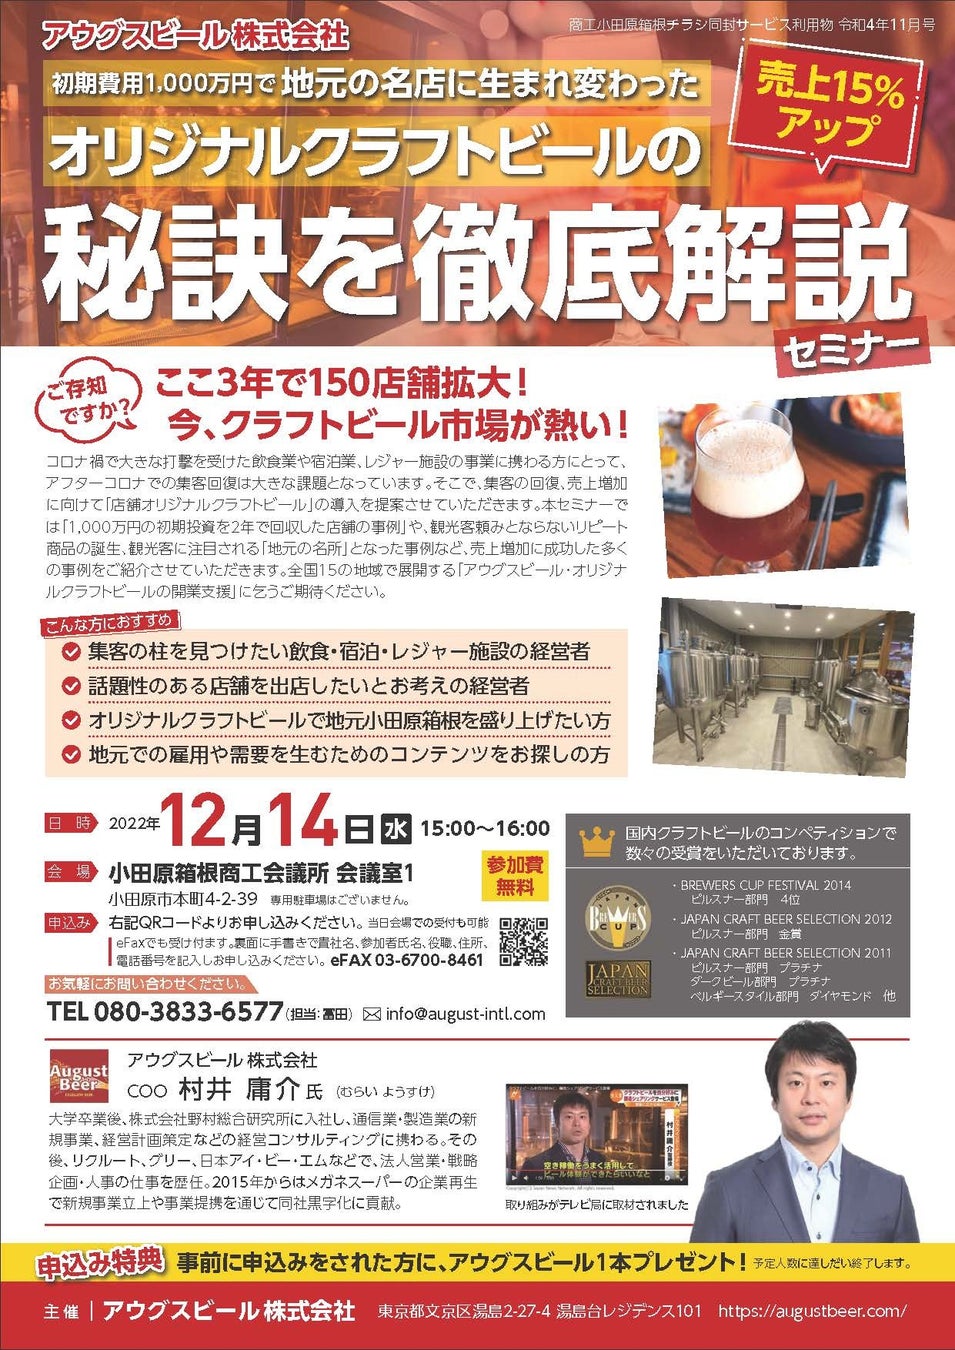 アウグスビールが小田原商工会議所にてクラフトビール事業の立ち上げ方法を解説した説明会を12月14日開催